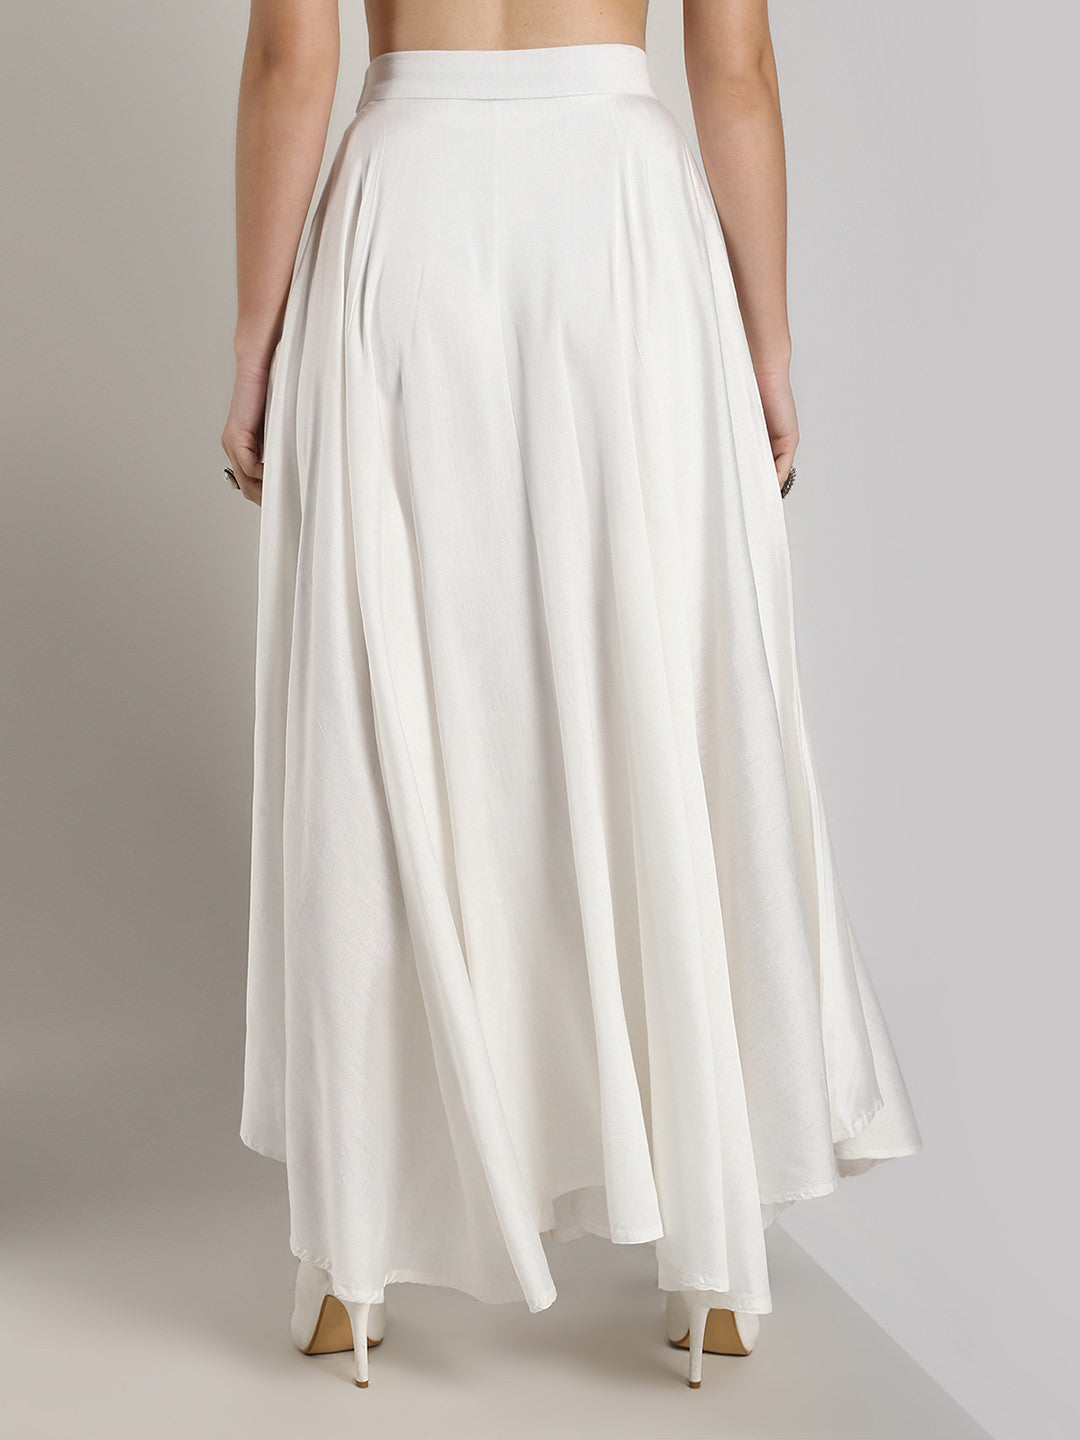 Rochas Logo Long Skirt in White | Lyst